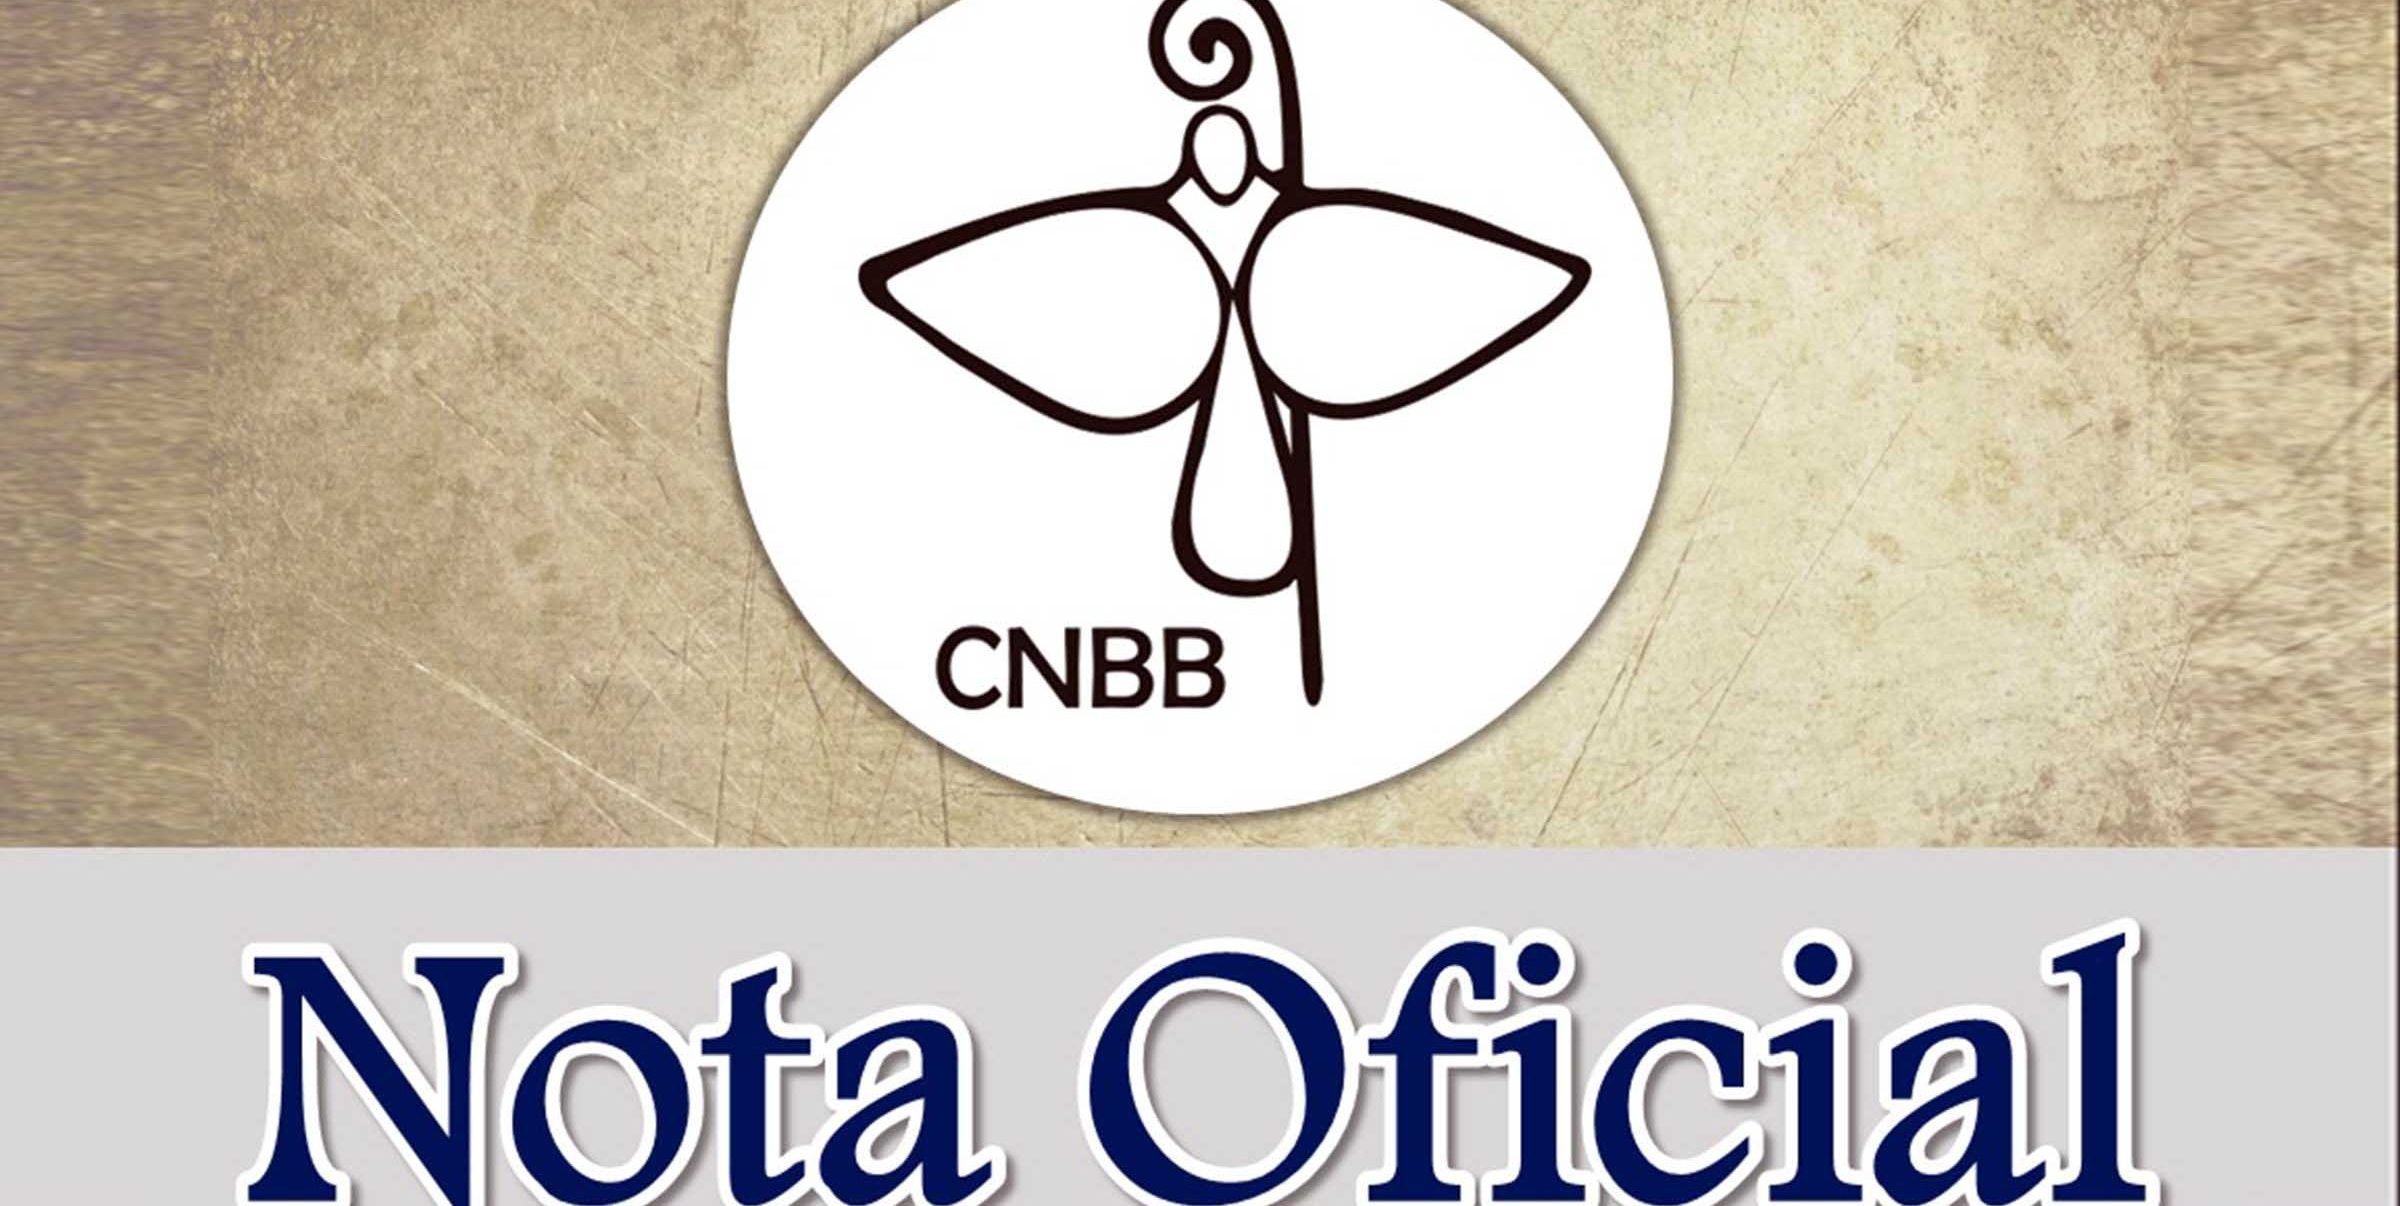 CNBB divulga notas oficiais